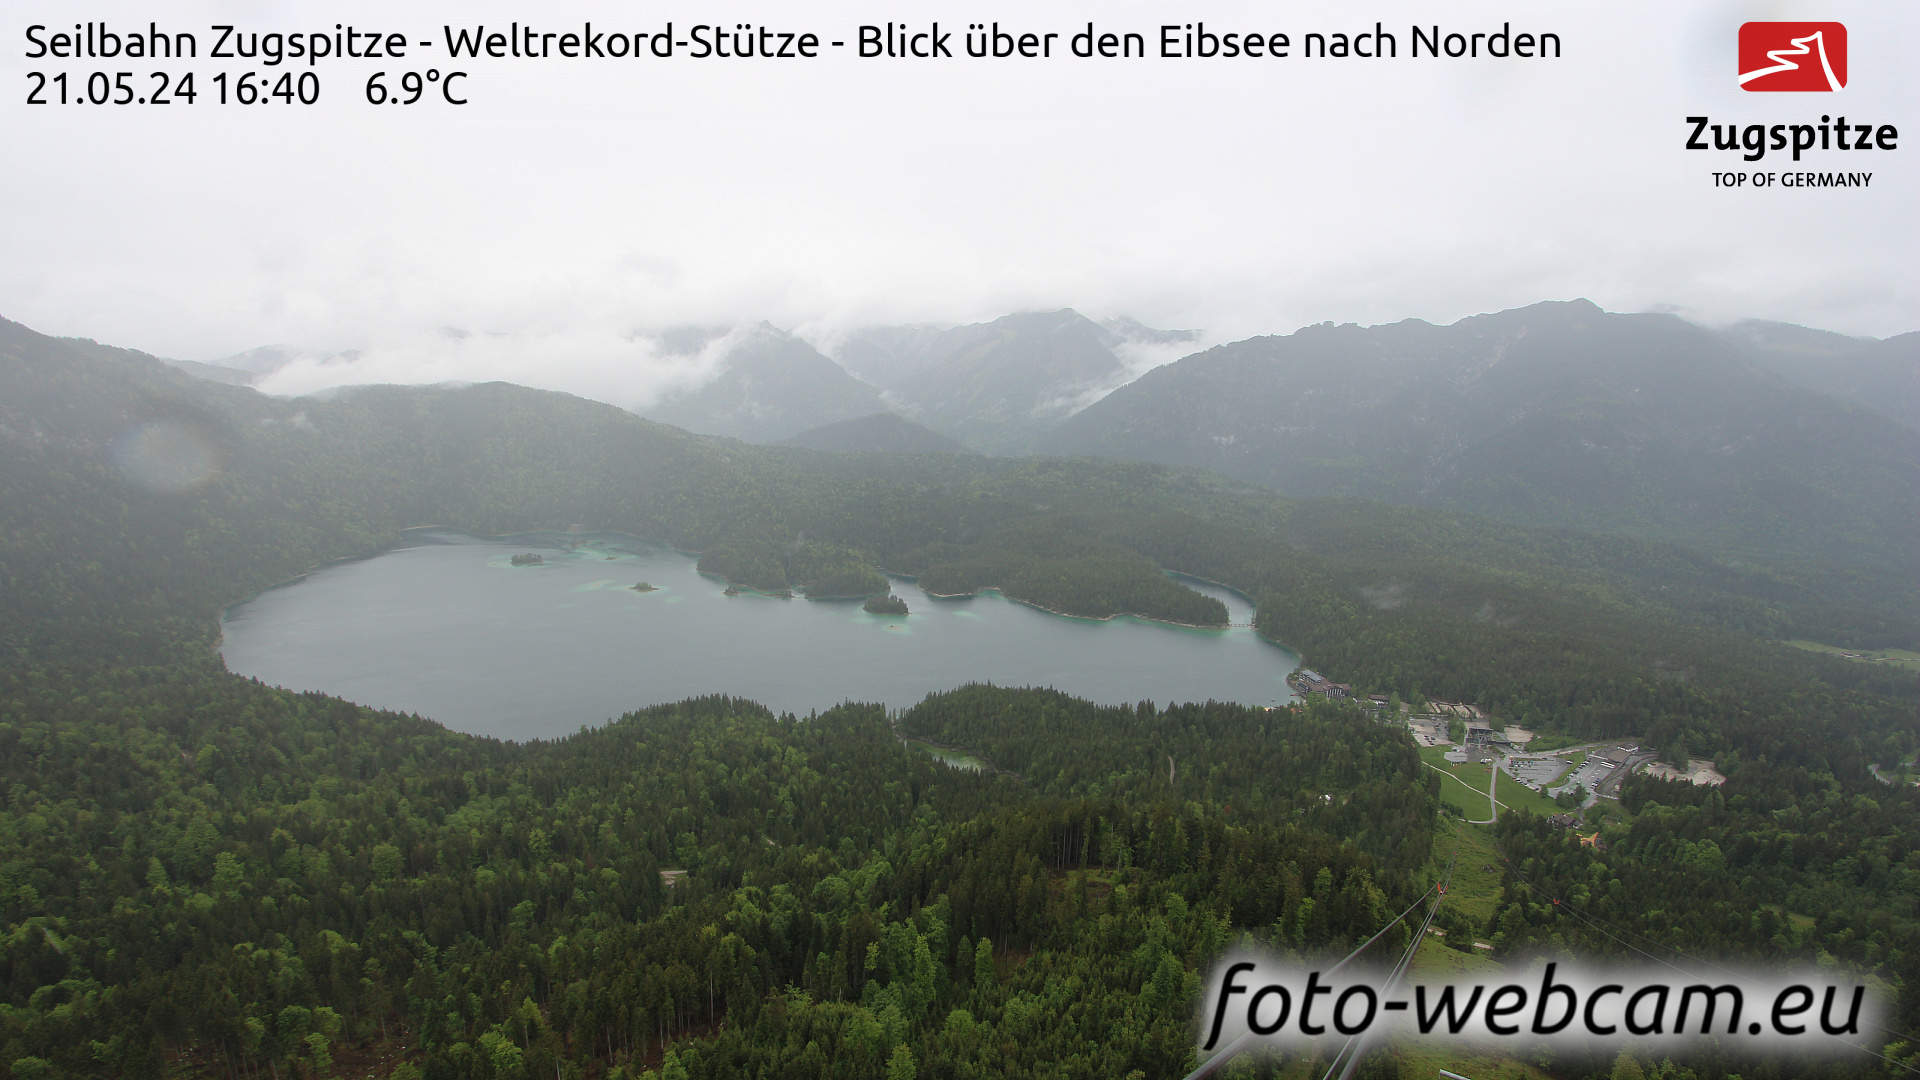 Zugspitze So. 16:49